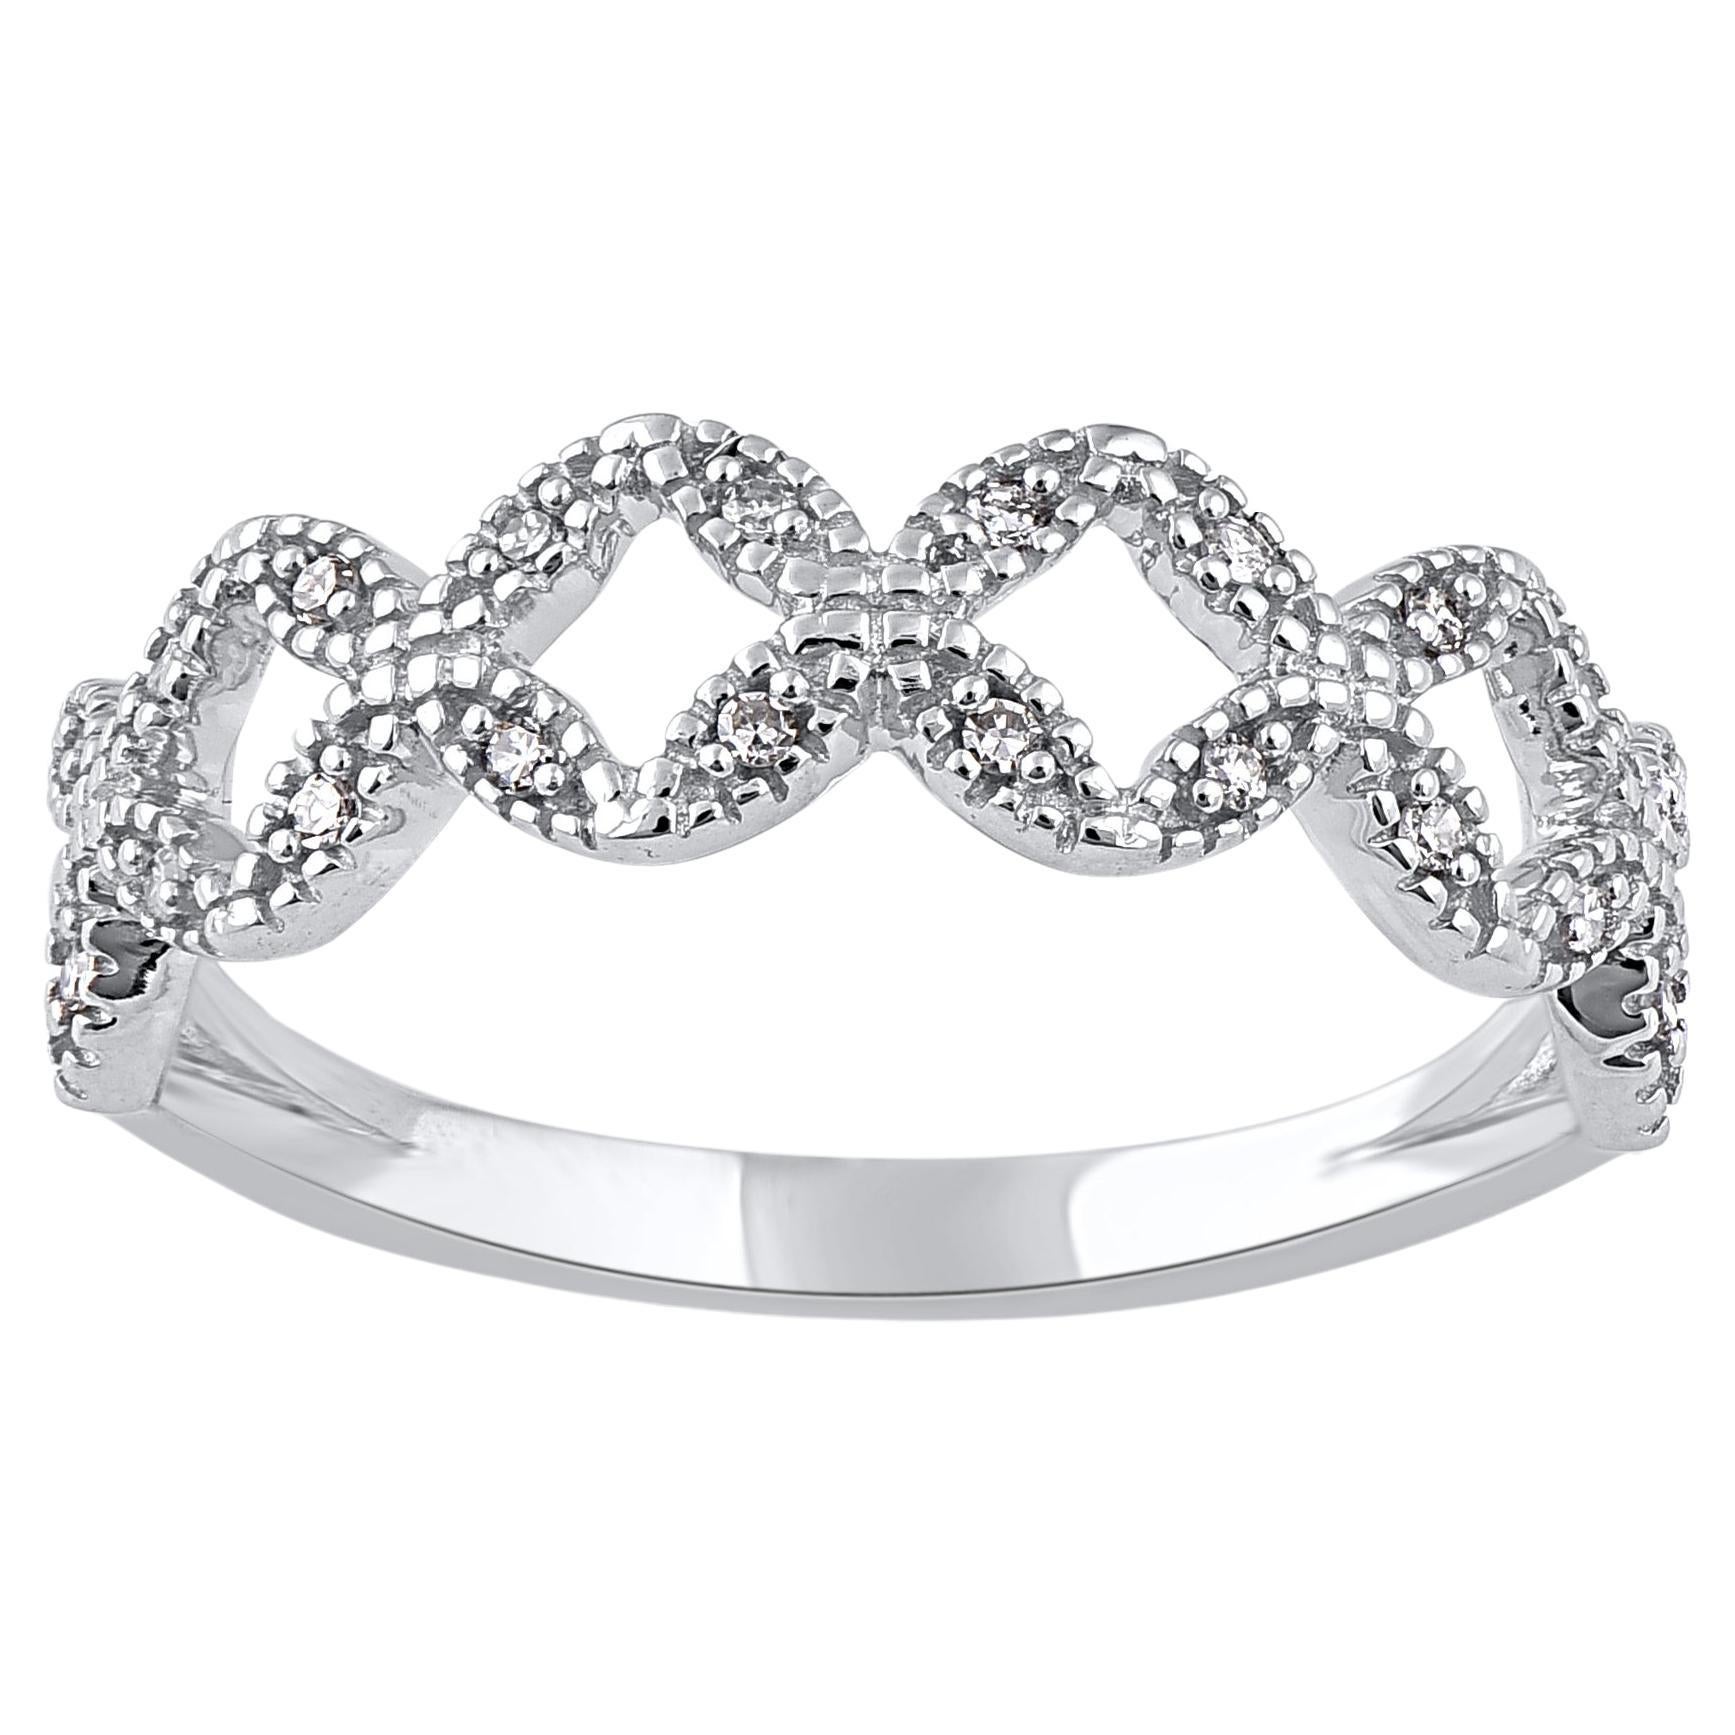 TJD 0.06 Carat Natural Round Diamond Wedding Band Ring in 14 Karat White Gold For Sale